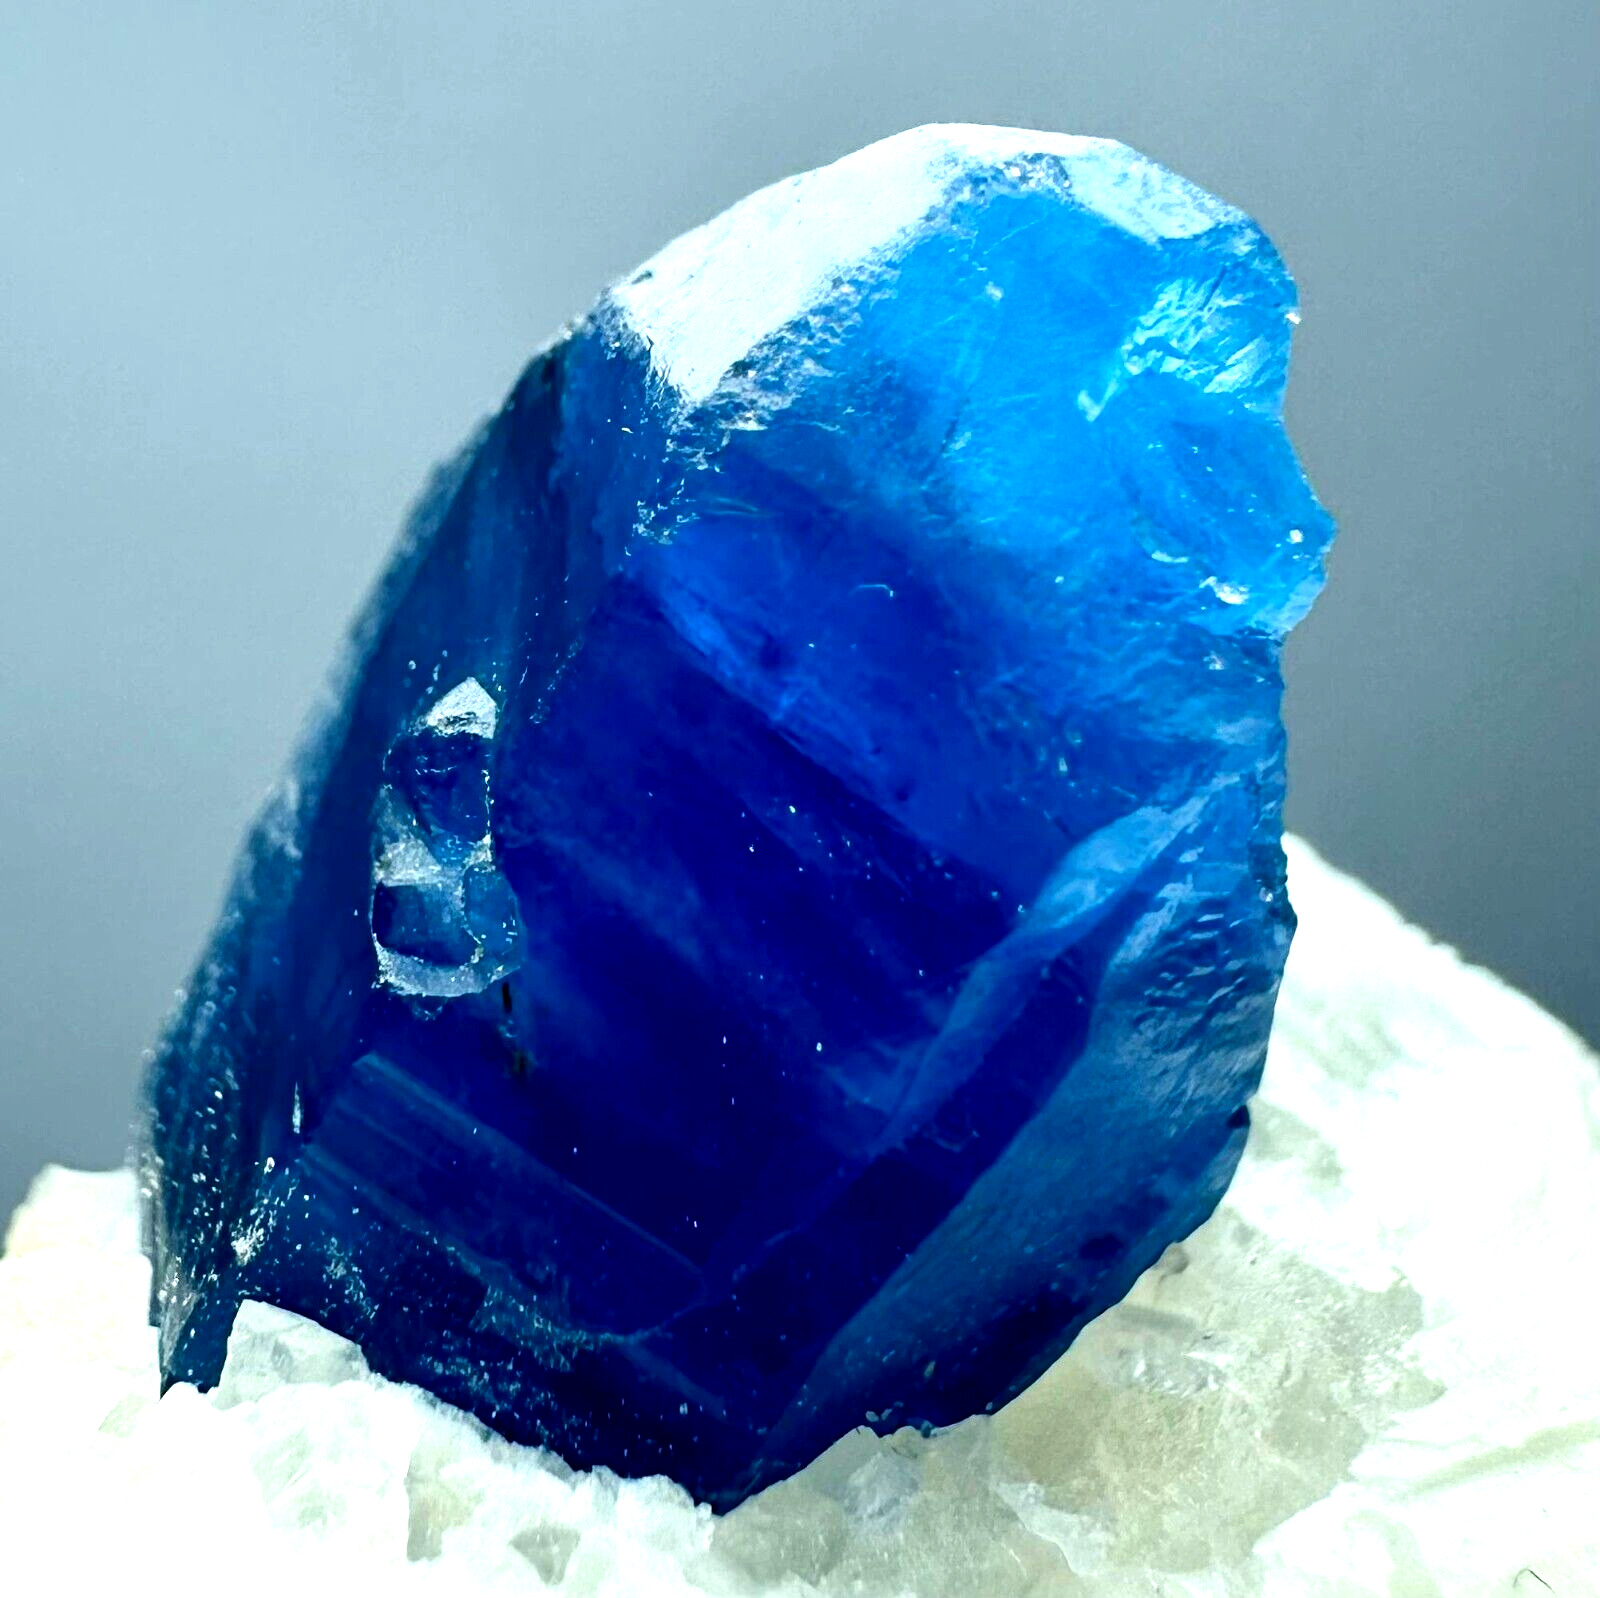 272 Carat Fluorescent Highest Quality Top Blue Afghanite Crystals On Matrix @Afg